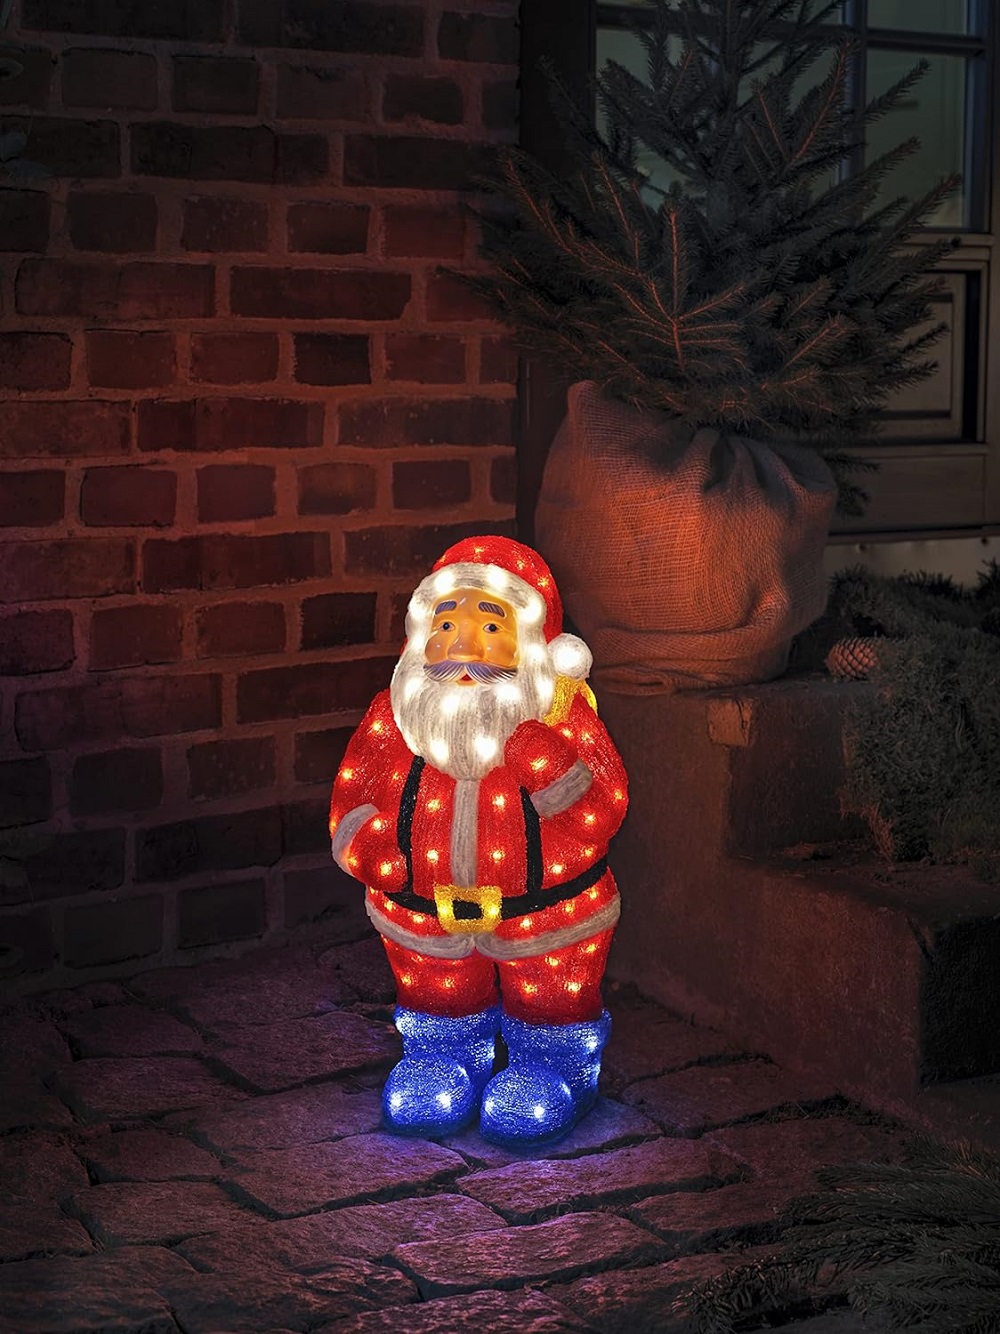 LED warmweiß 55x28,5cm 104er 6247-103 24V Konstsmide Weihnachtsmann Acryl